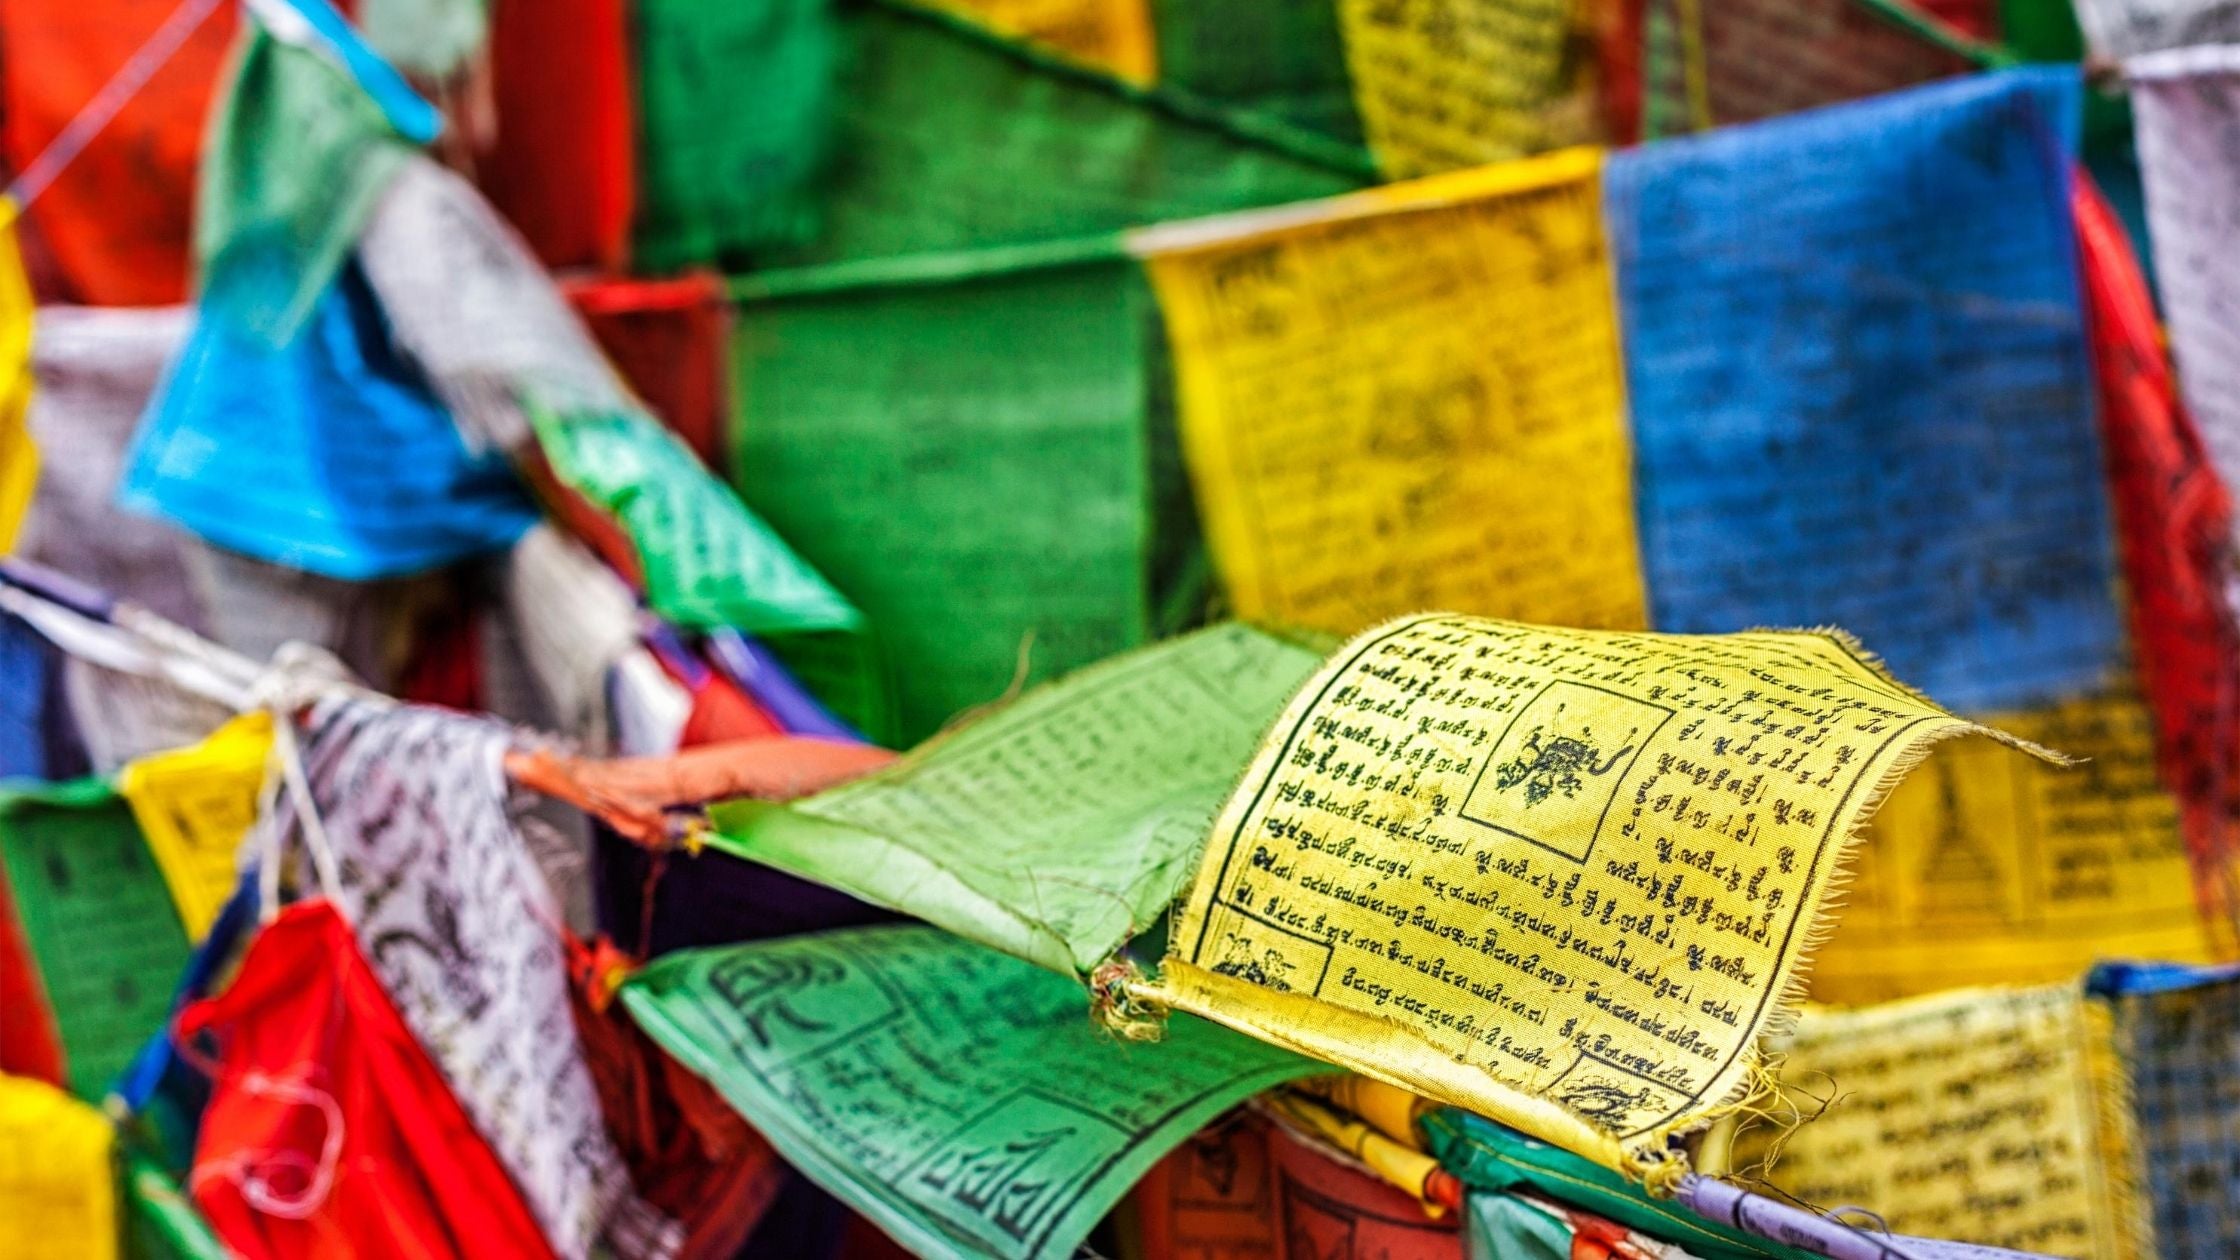 Tibetan Prayer Flags from Nepal